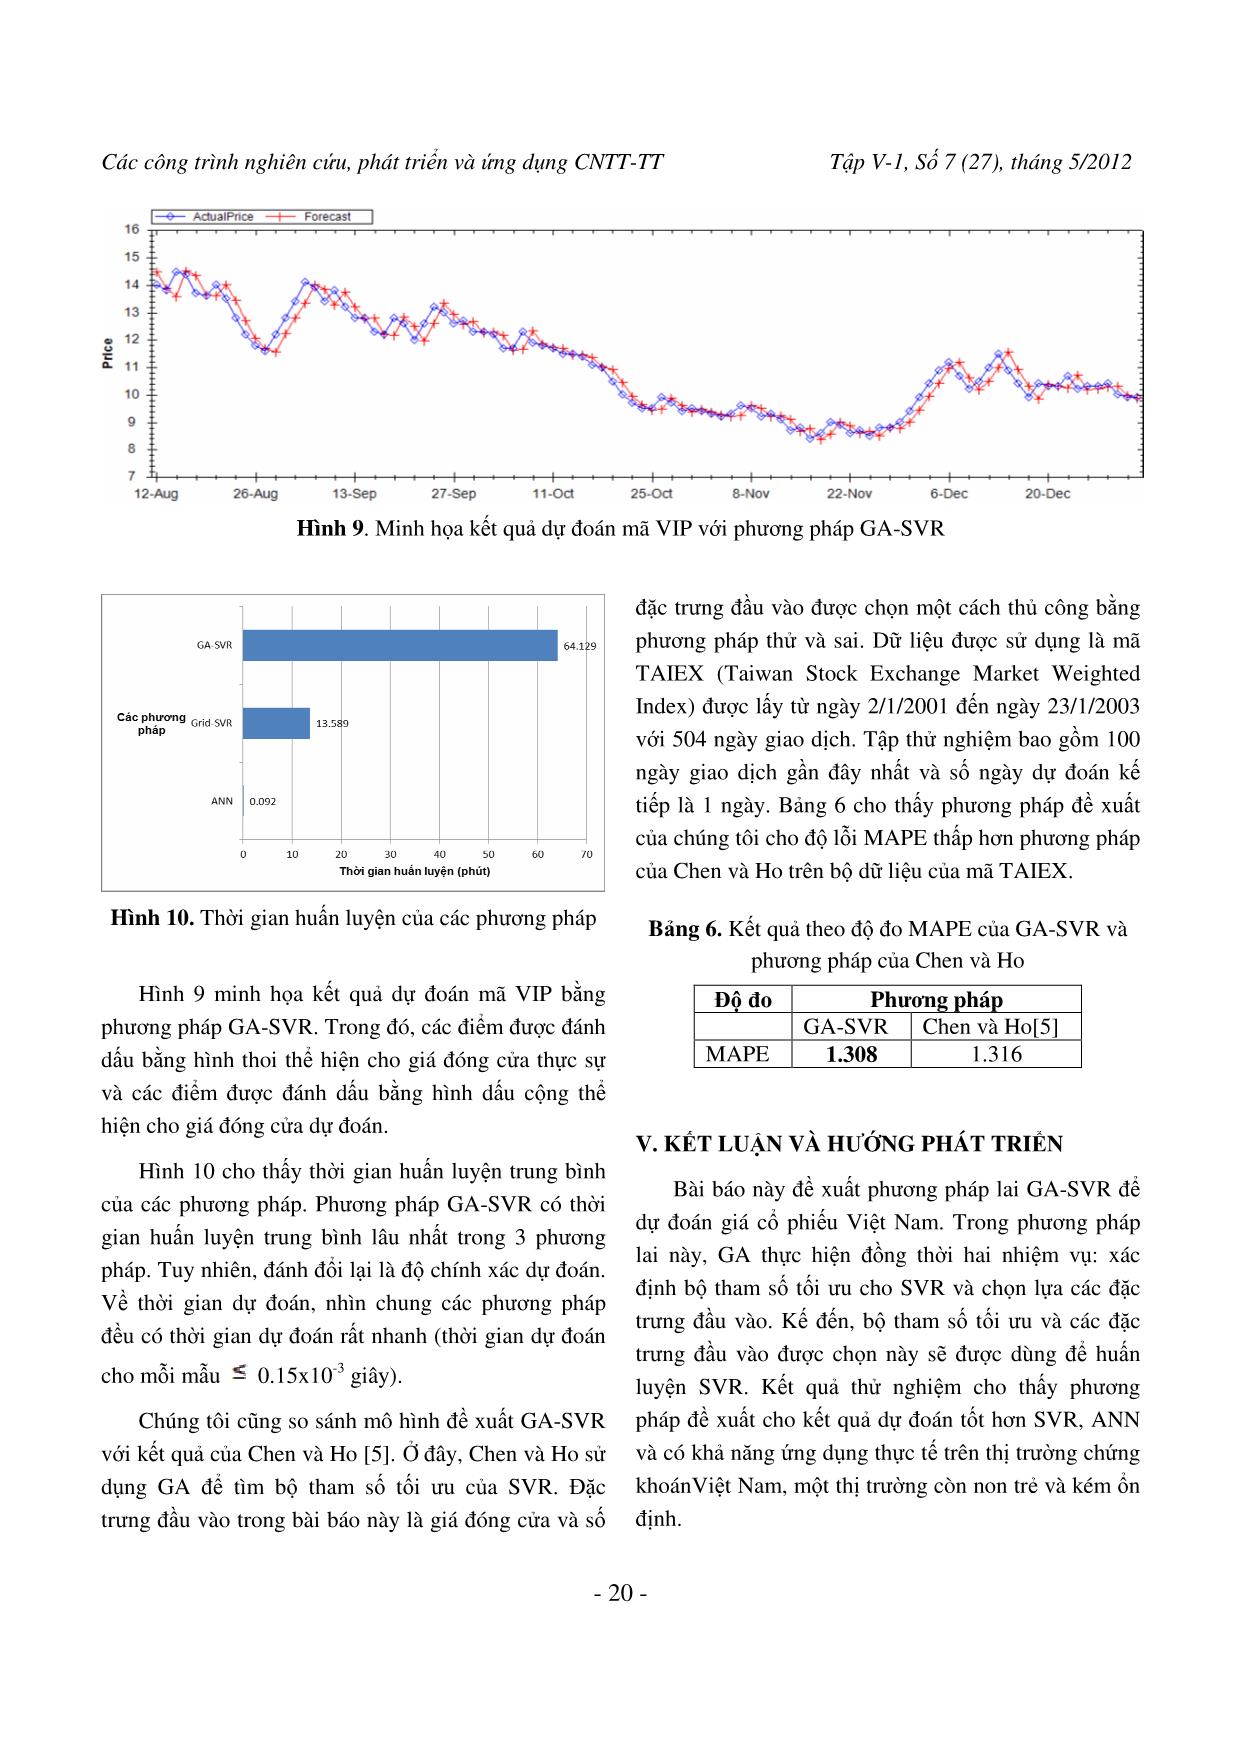 Dự đoán giá cổ phiếu trên thị trường chứng khoán Việt Nam bằng phương pháp lai GA-SVR trang 9